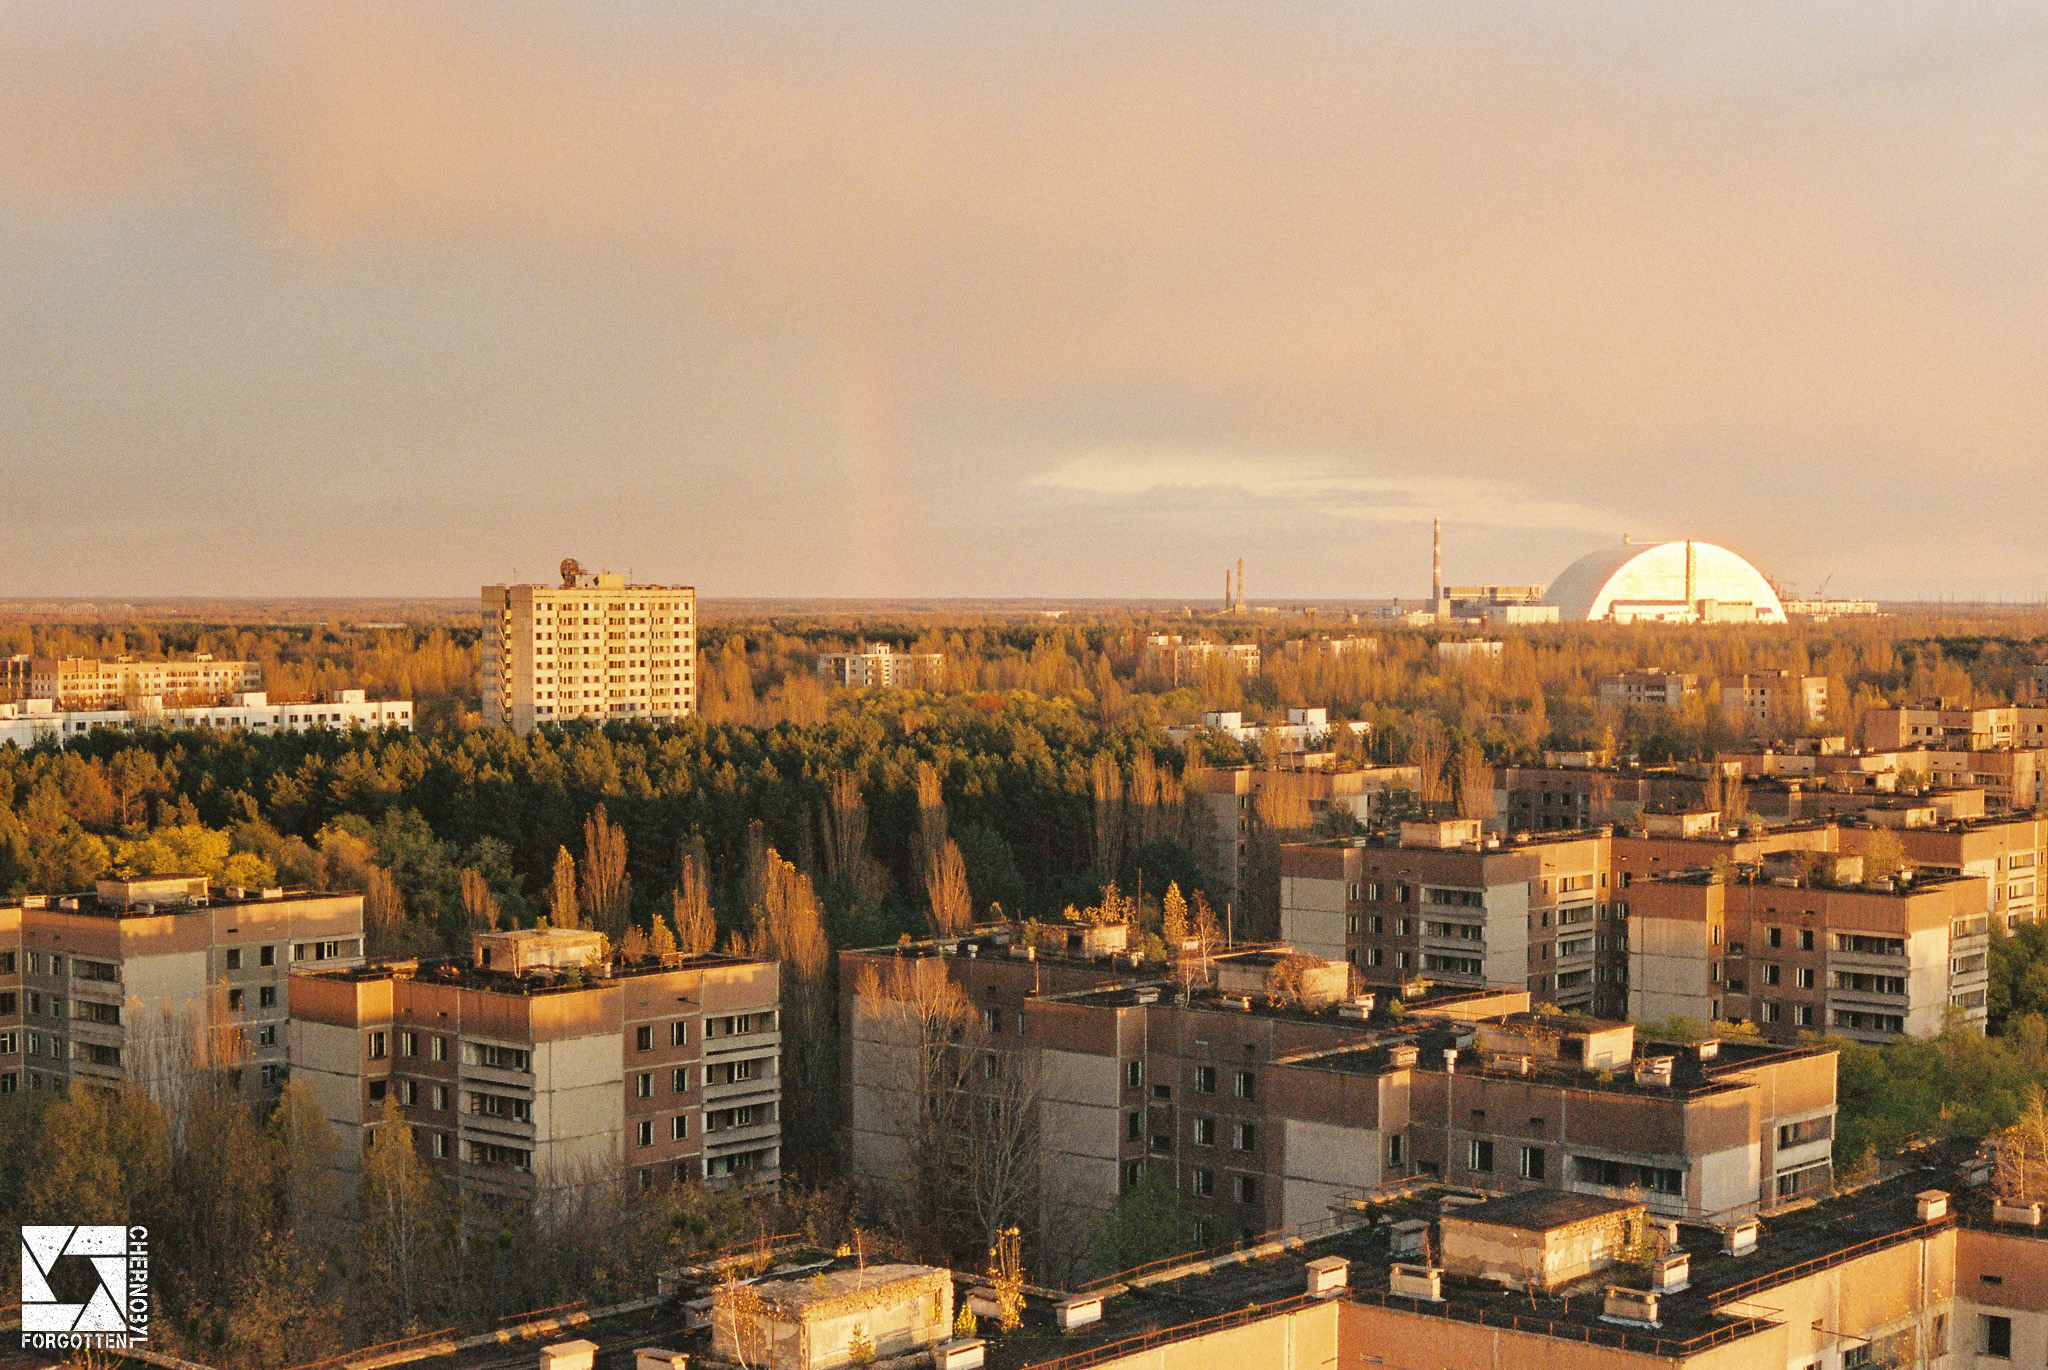 Chernobyl zone captured on film